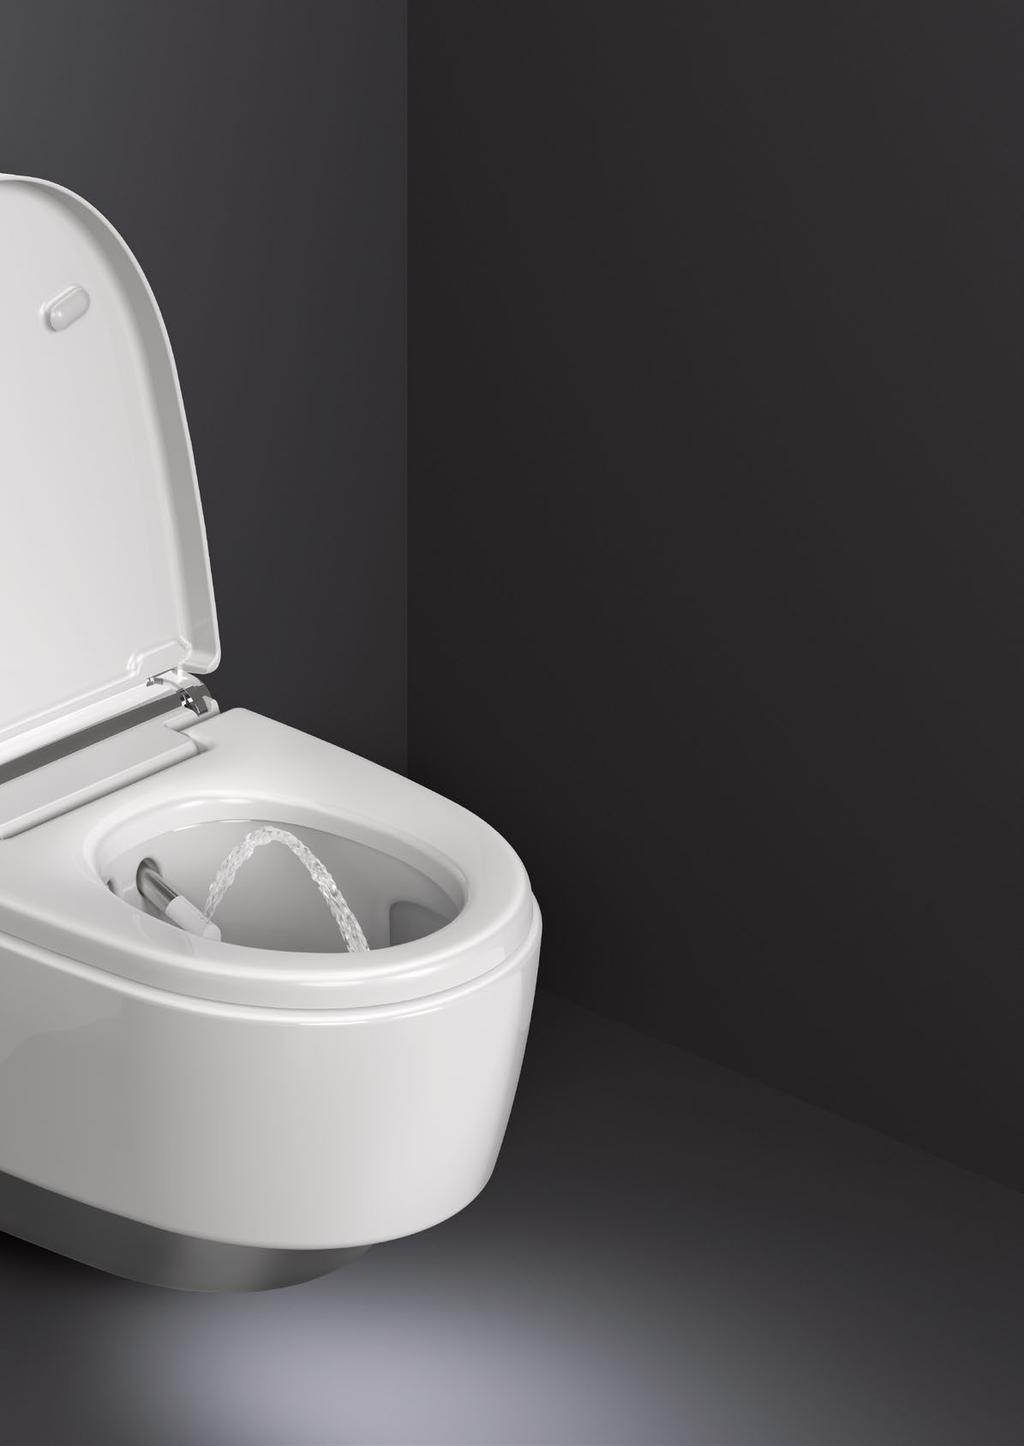 PRAKTICKY BEZDOTYKOVÁ OBSLUHA Díky bezdotykové detekci uživatele se WC víko otevírá i zavírá automaticky.